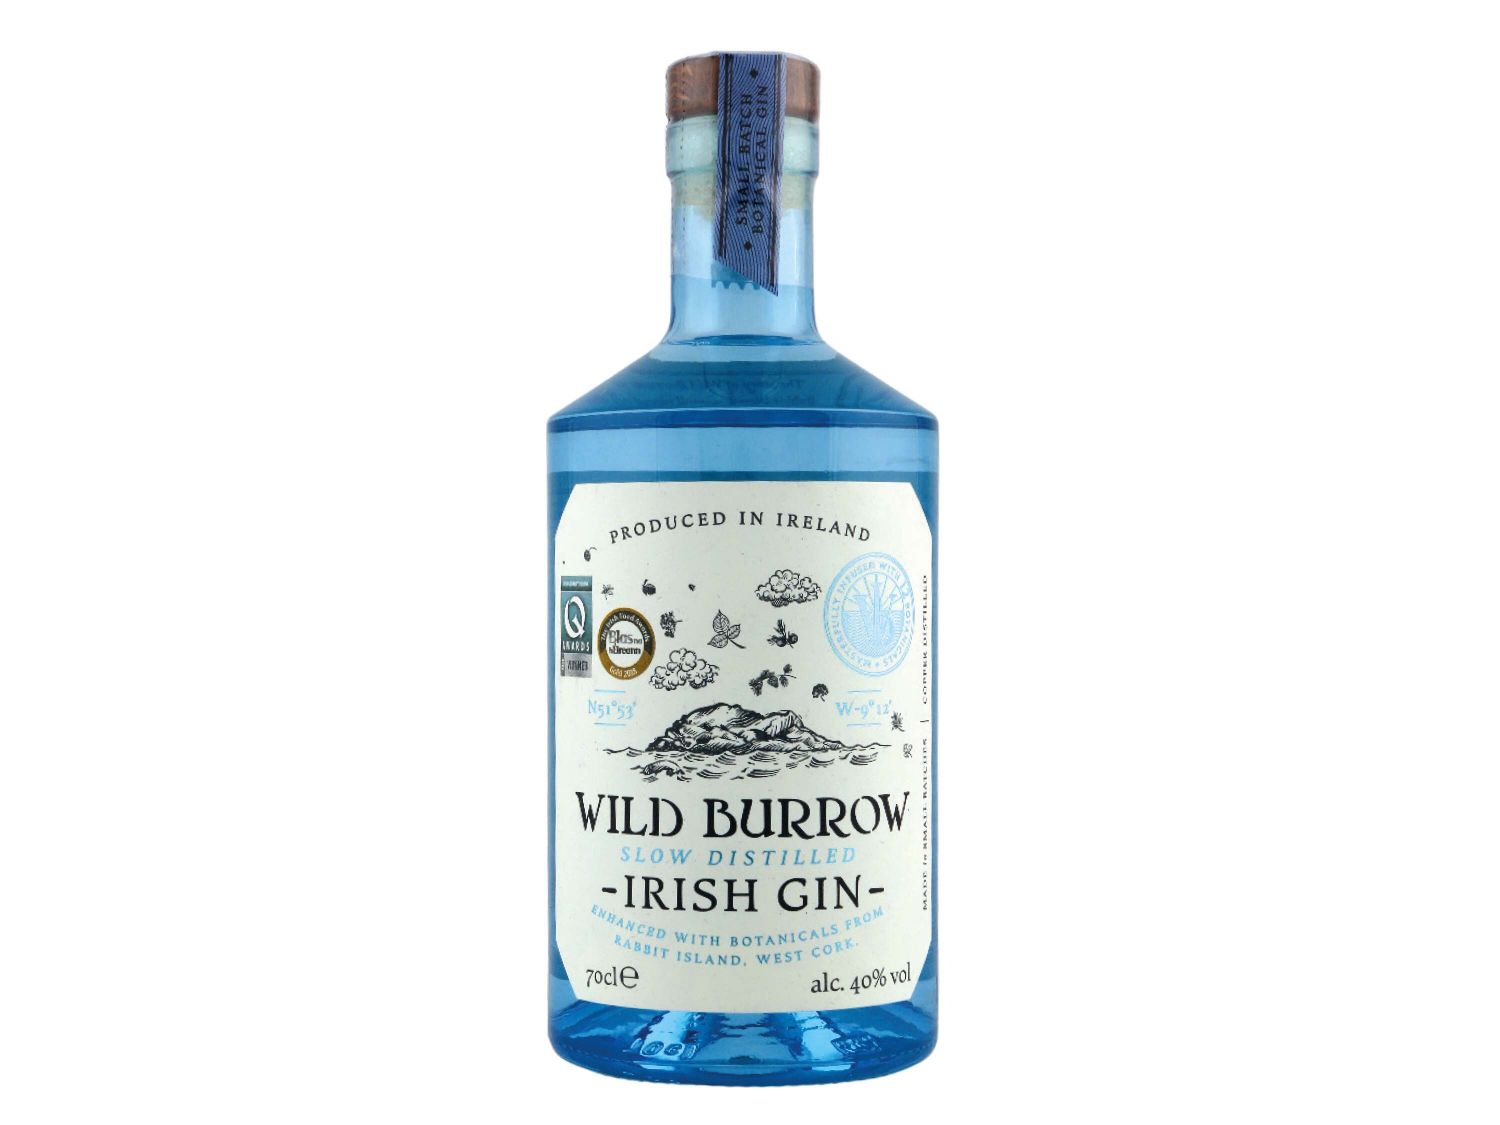 NI - Wild Irish Gin Lidl 40% Burrow